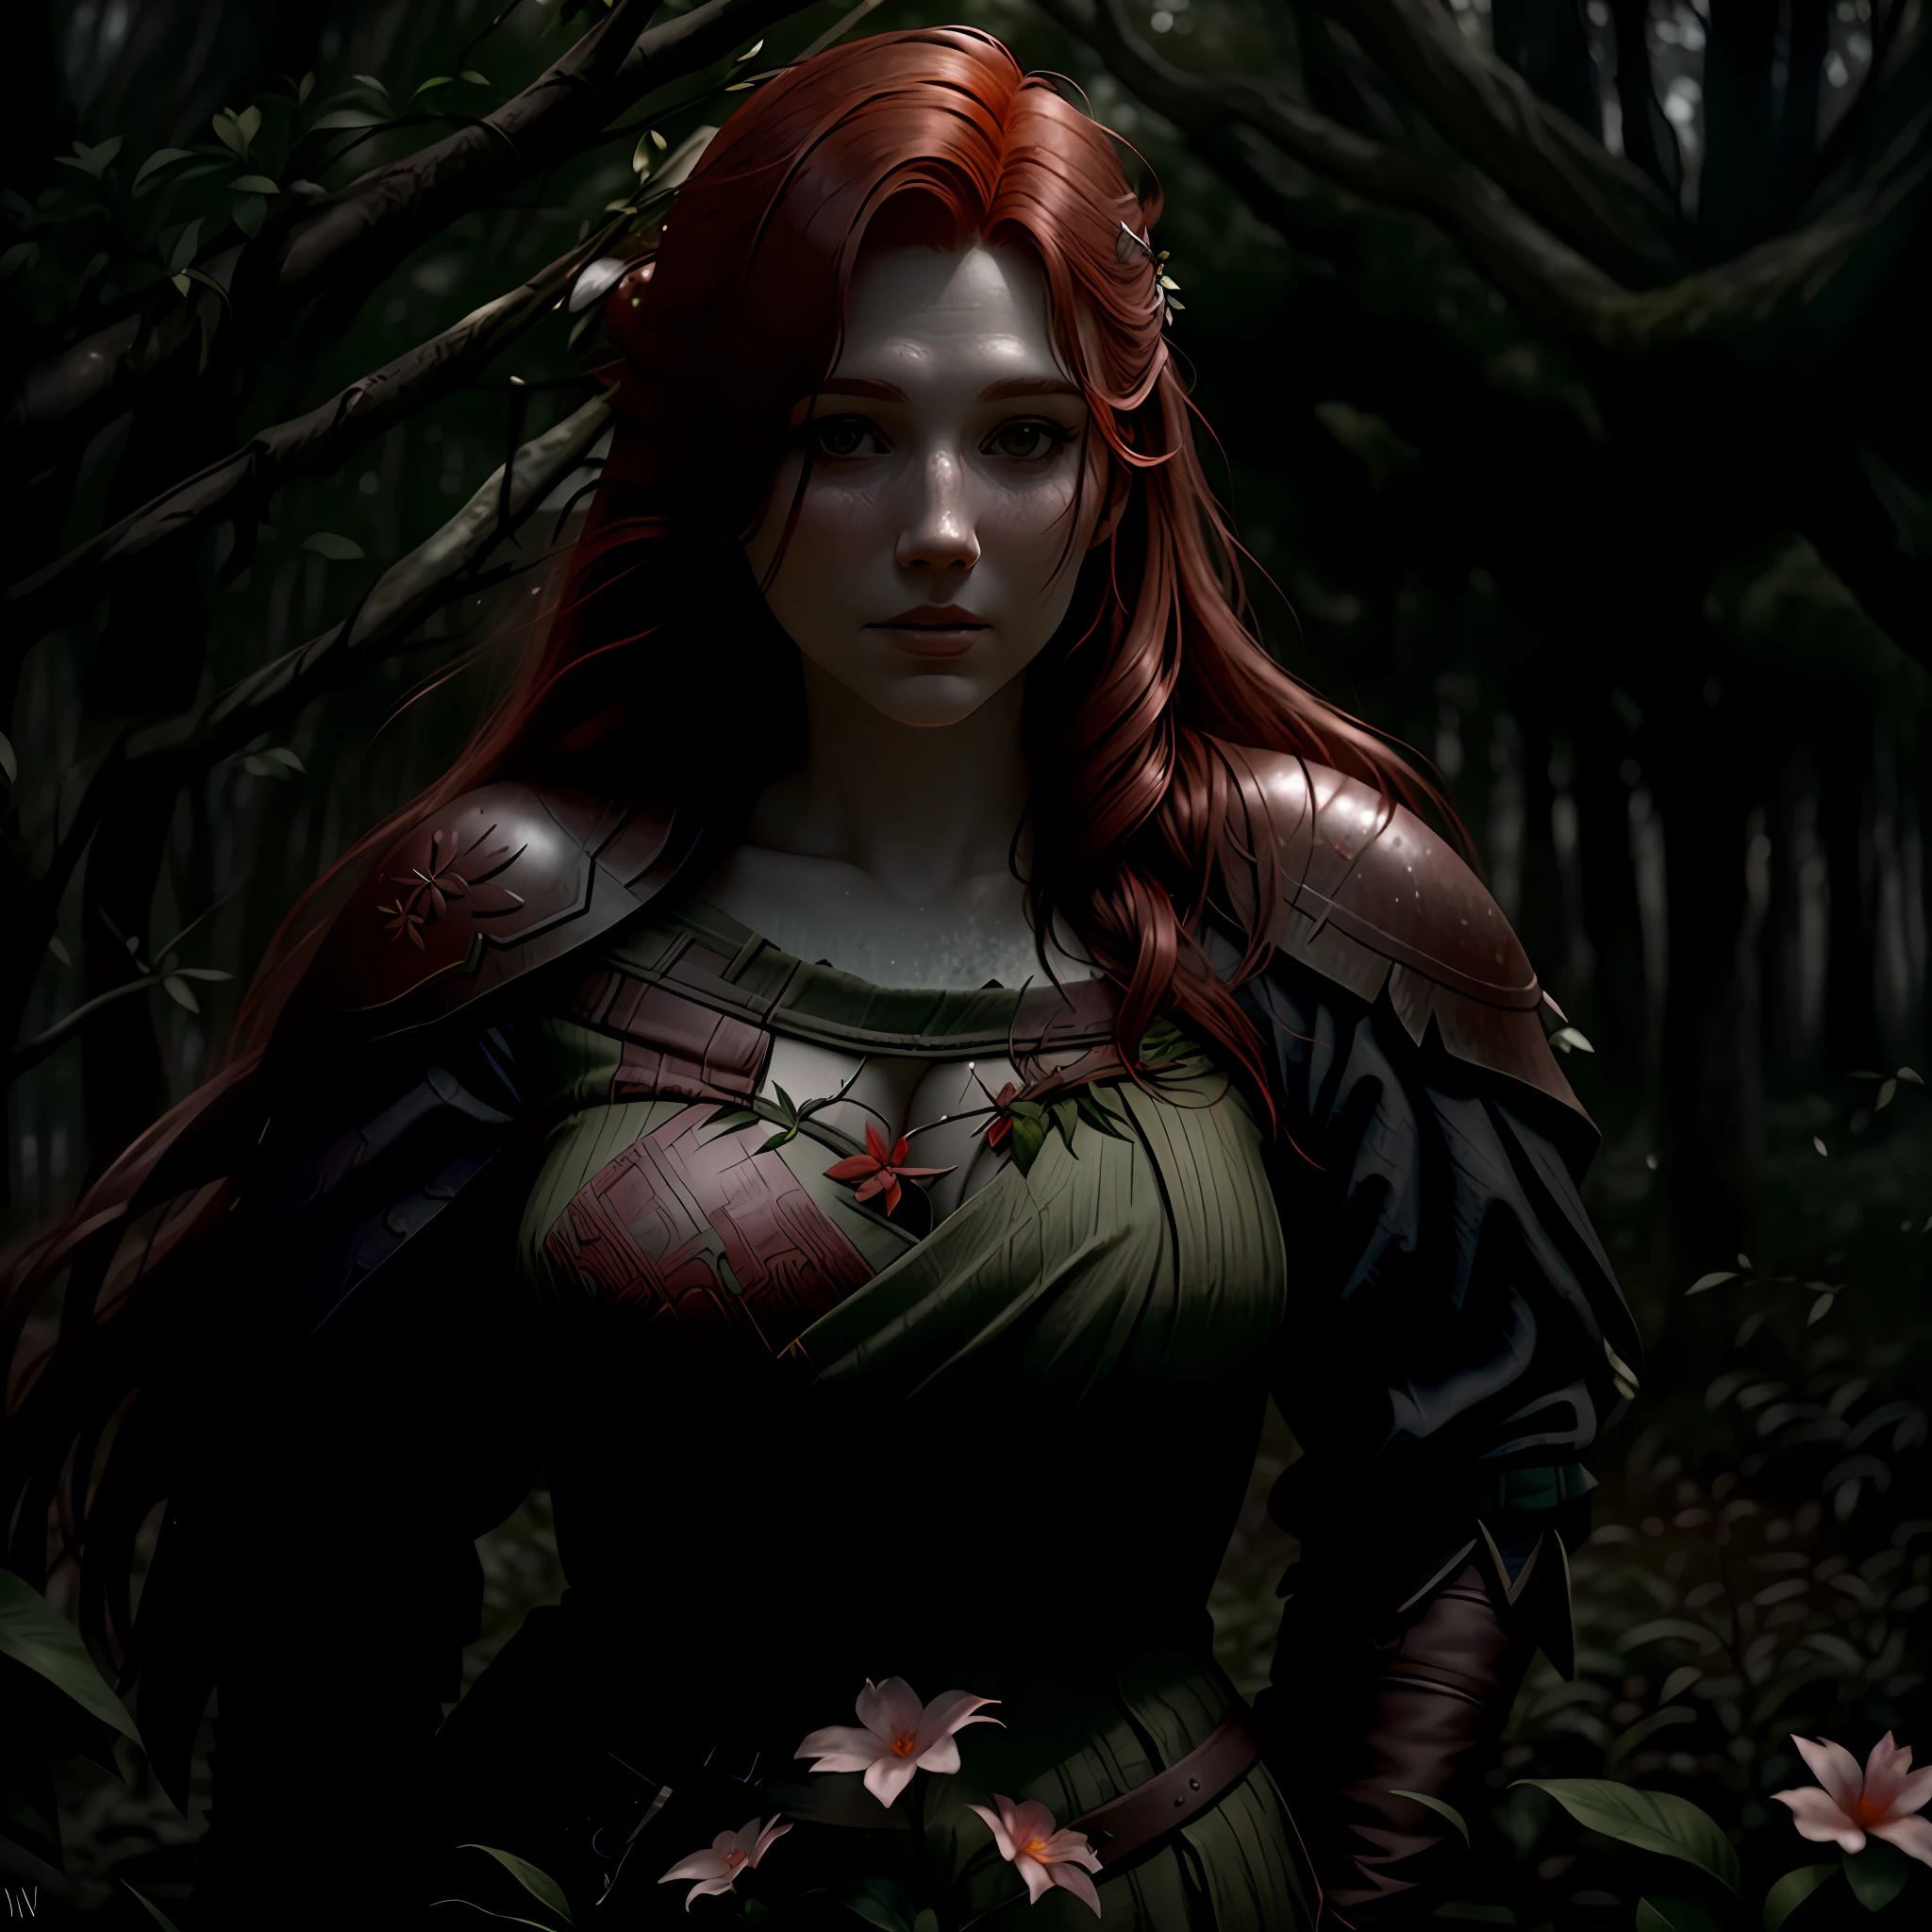 红头发女人, 第三人称视角, 维京, 中世纪, 神秘, 森林环境, 潮湿的植物和花卉, 分支, 最好的质量, 电影焦点, 完美照明, 阴沉的天气, 清晰的环境